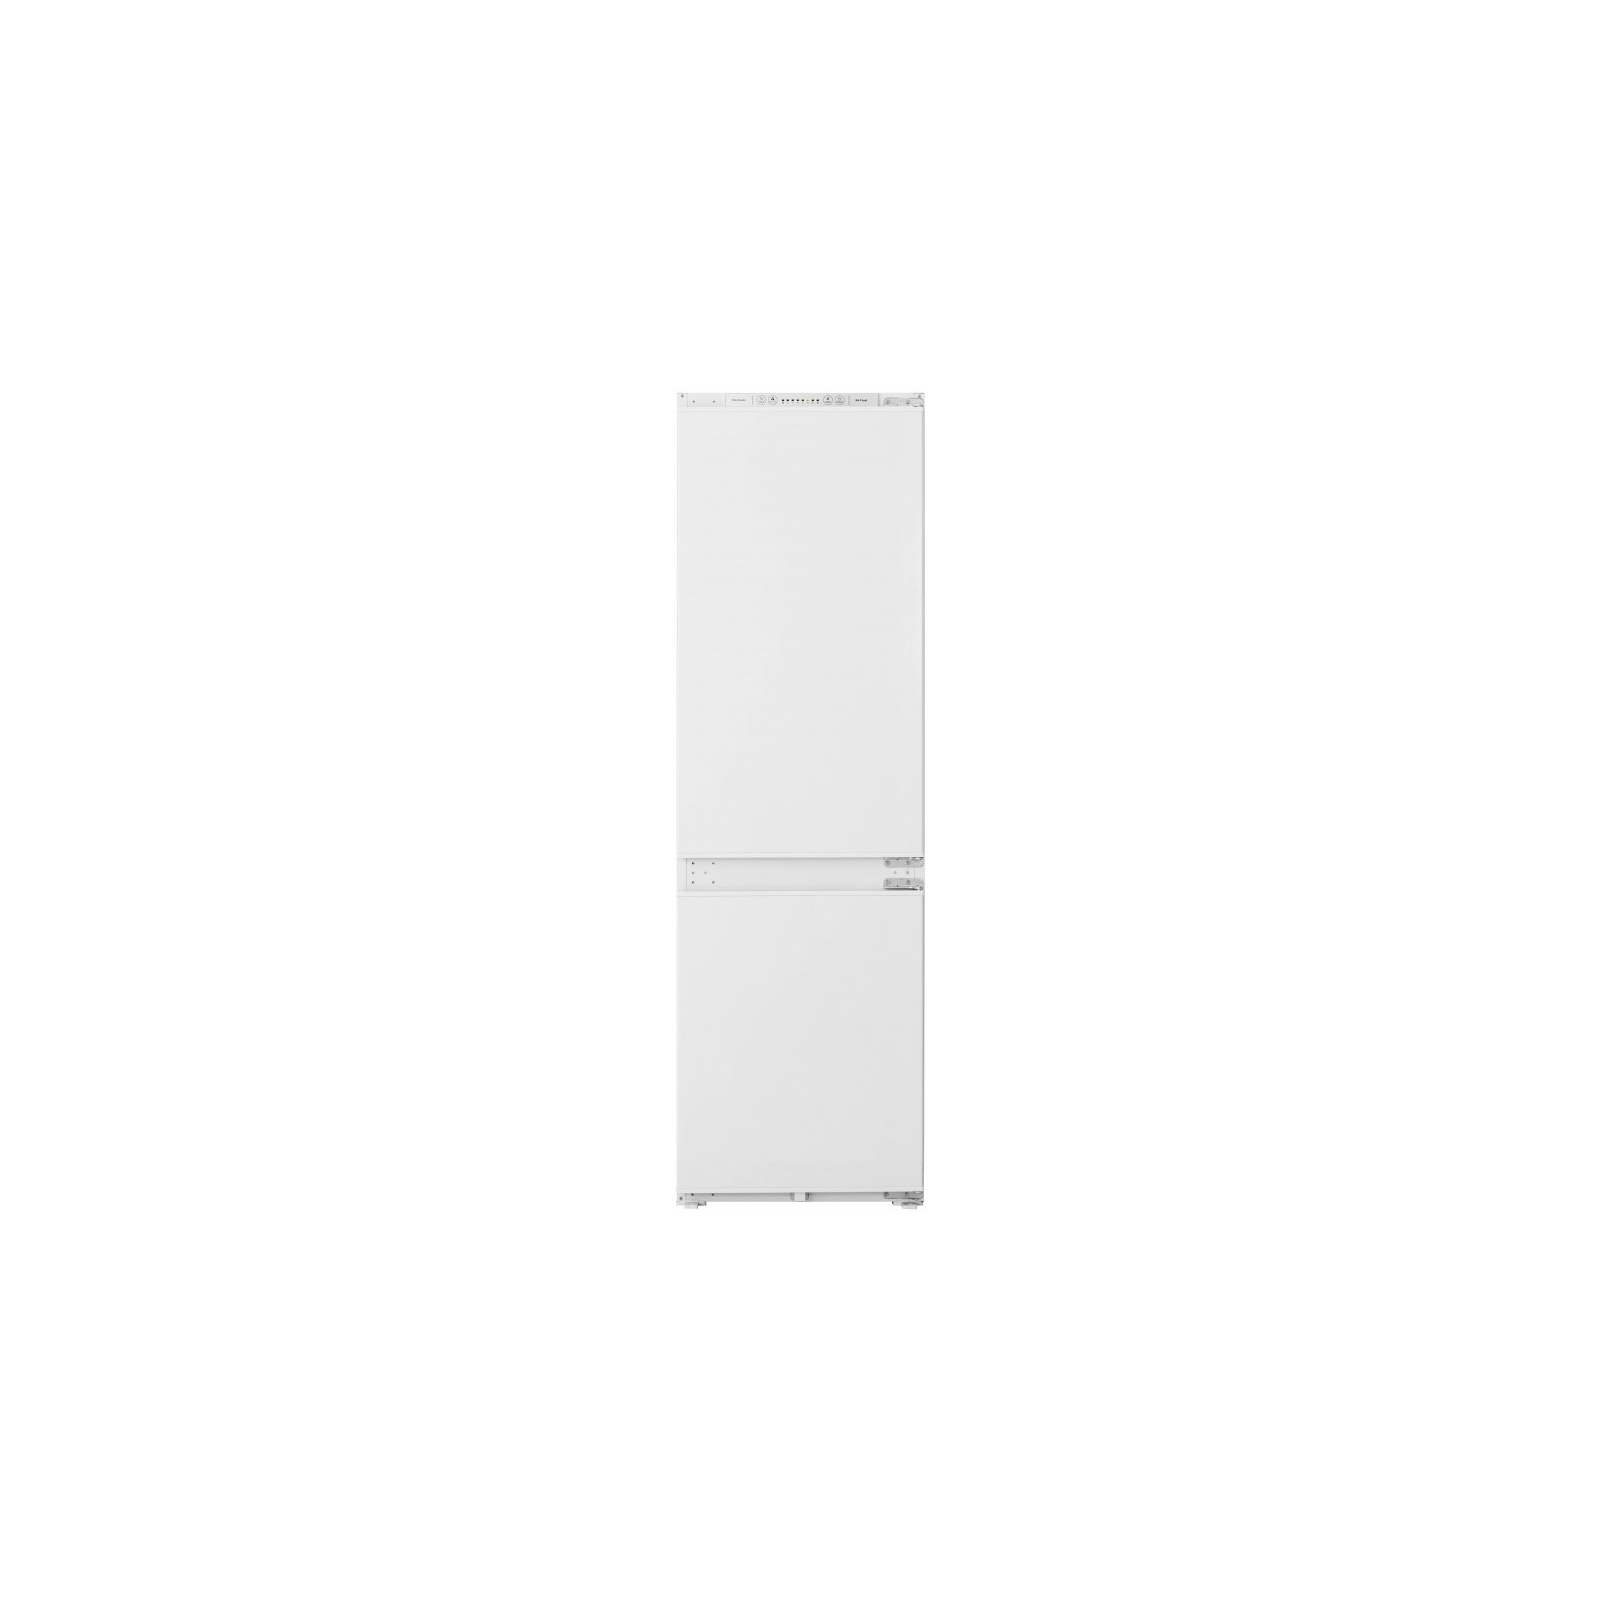 Холодильник MPM MPM-240-FFH-01/A